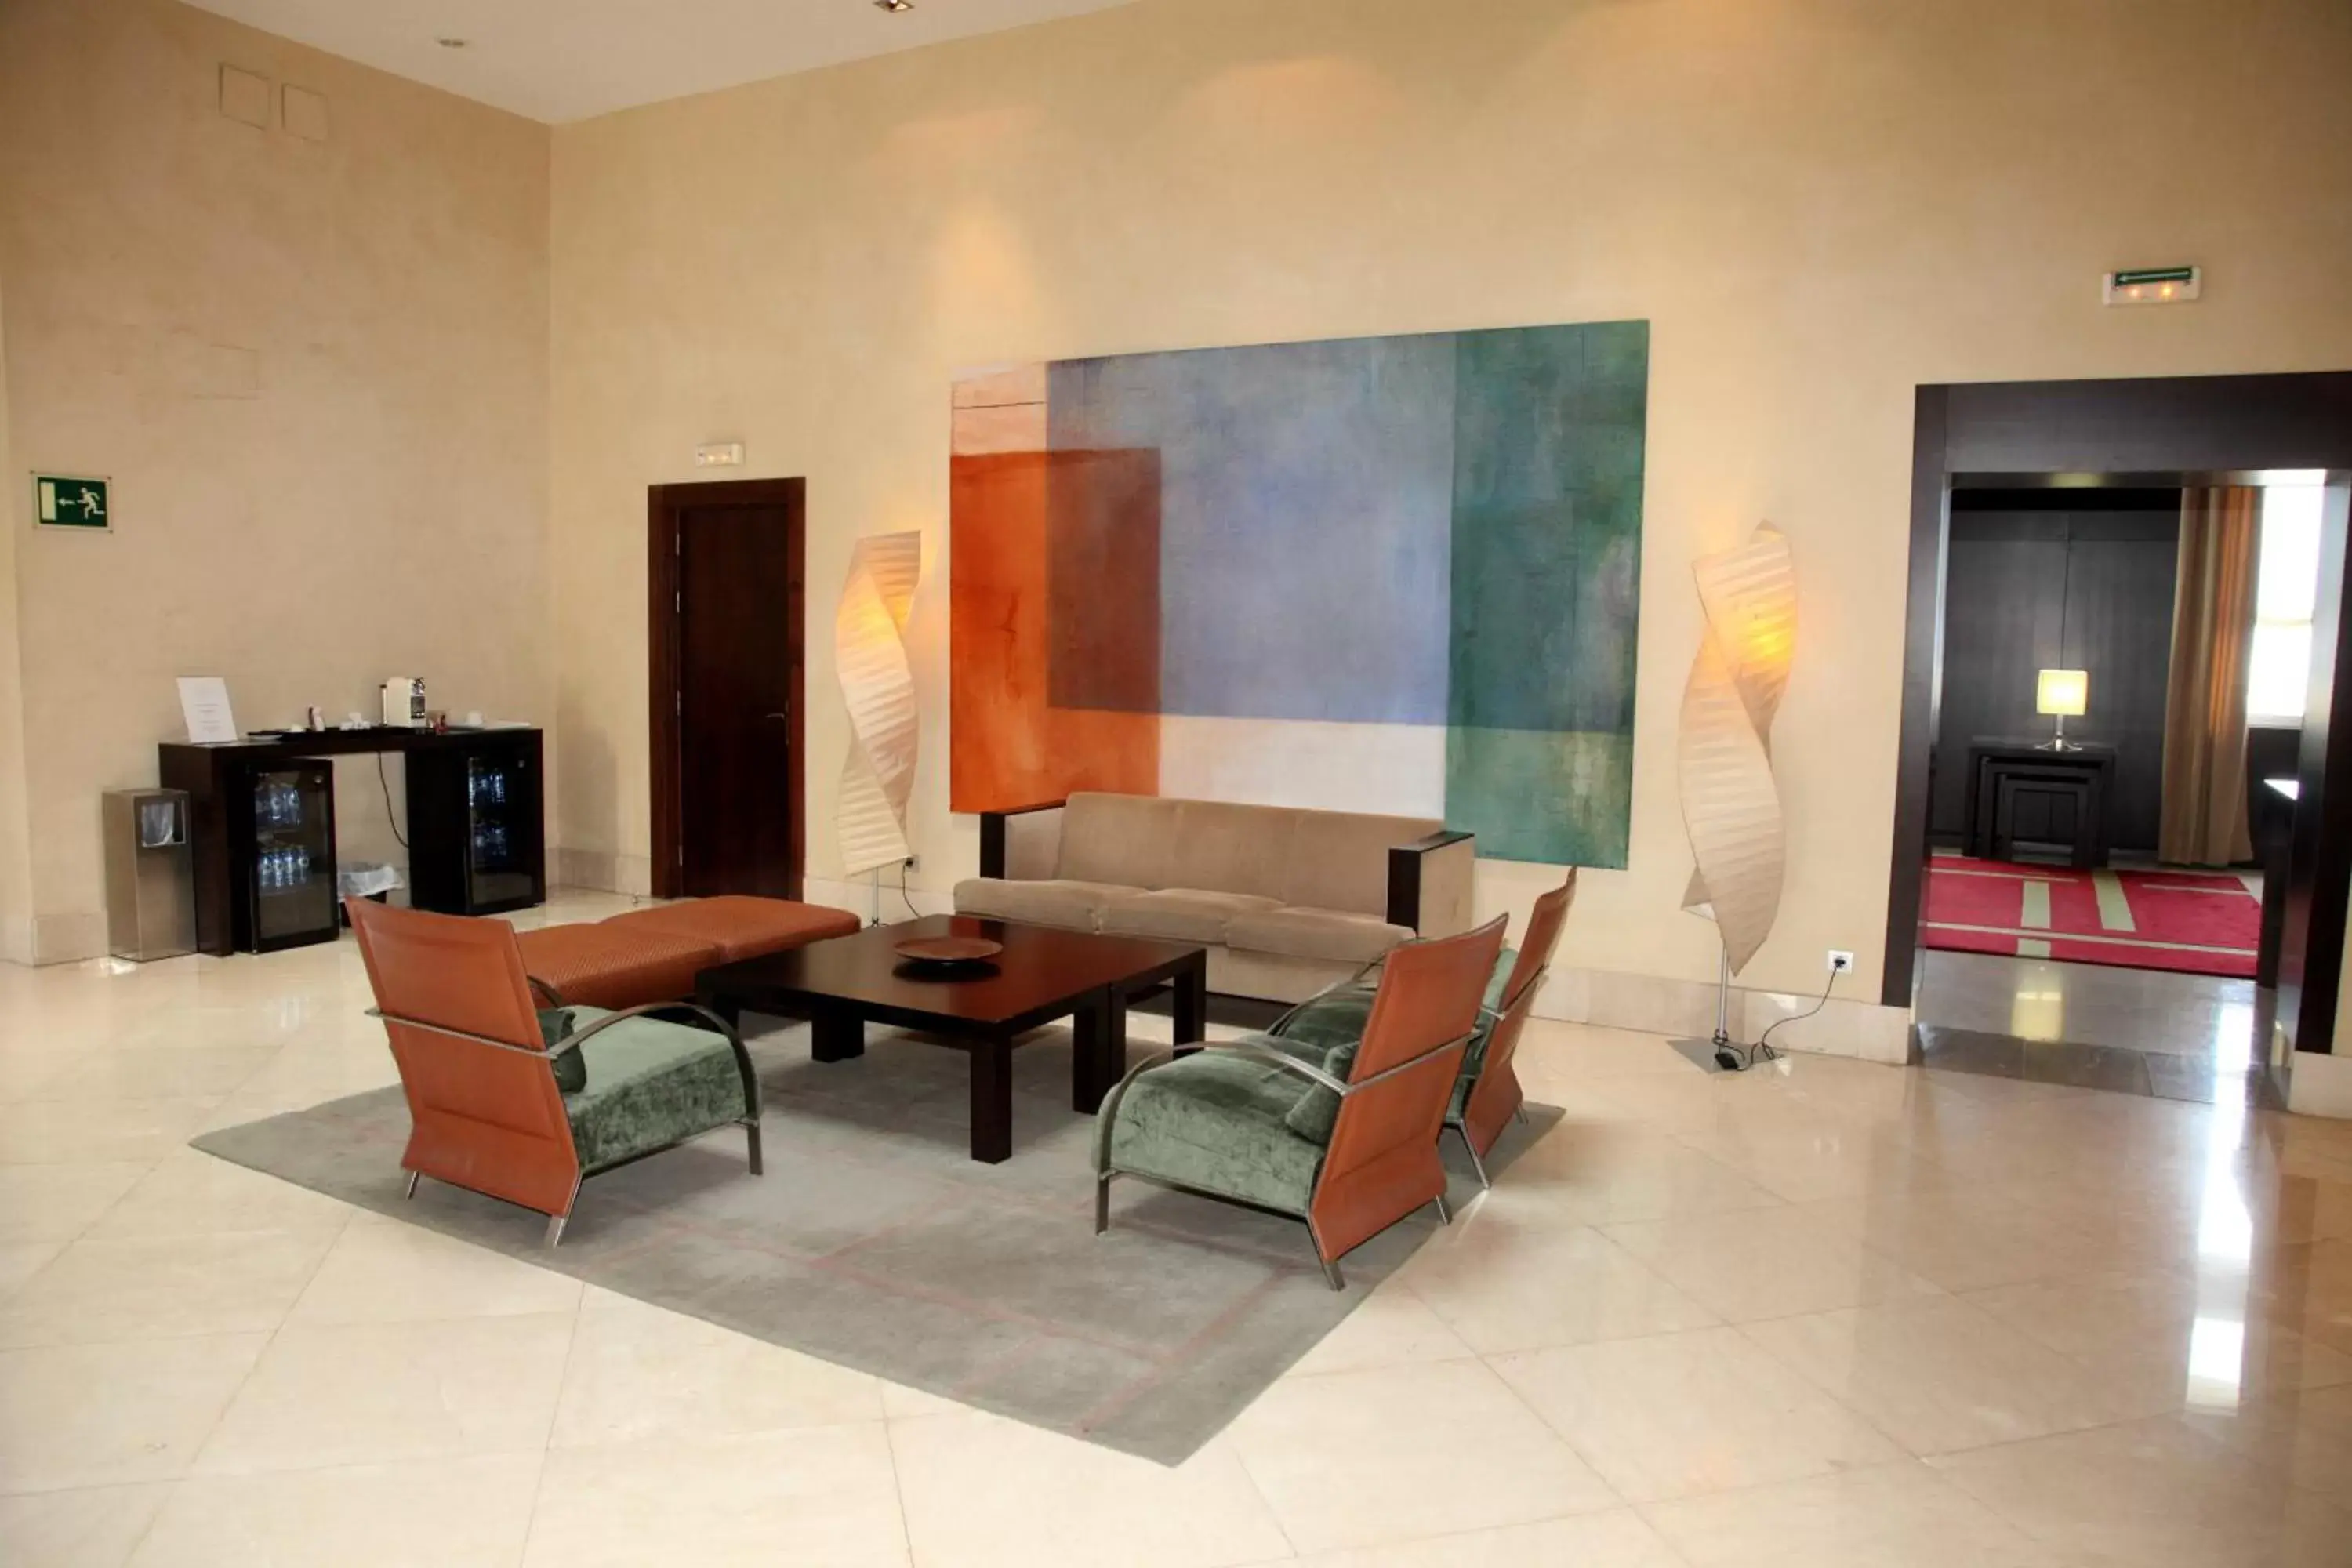 Lobby or reception, Seating Area in Hotel URH Palacio de Oriol